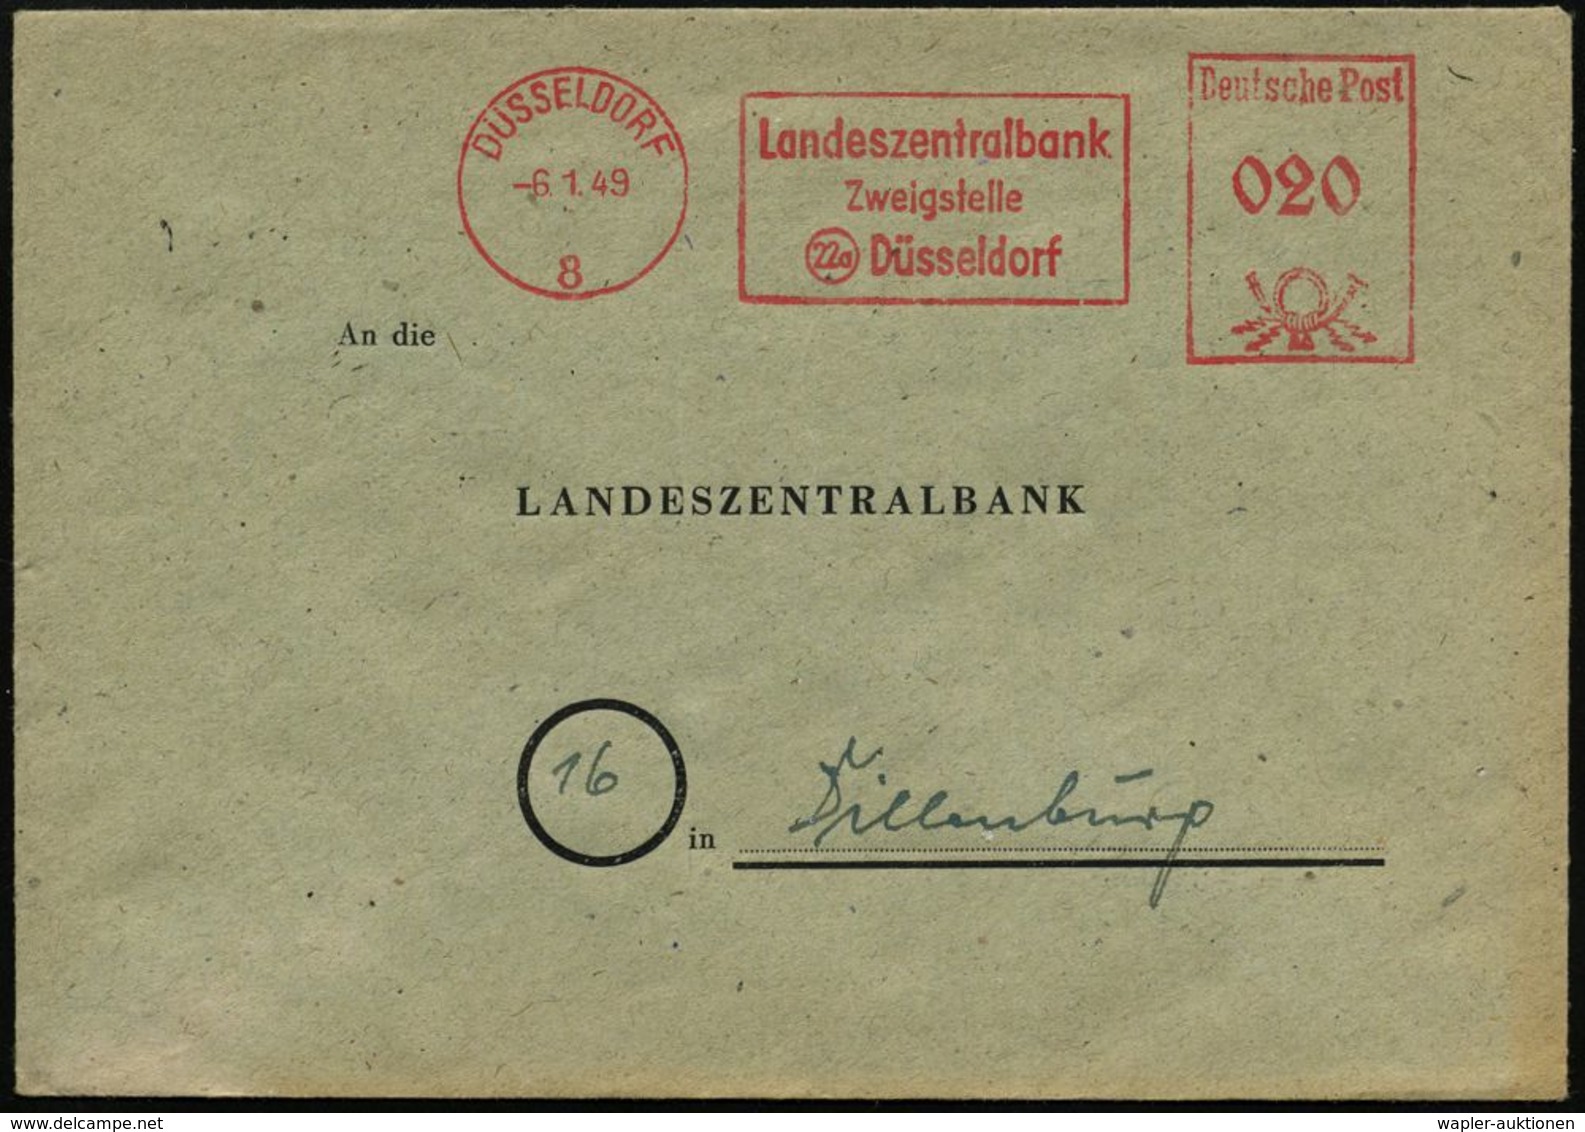 STAATSBANKEN / REICHSBANK / BUNDESBANK : DÜSSELDORF/ 8/ Landeszentralbank/ Zweigstelle 1949 (6.1.) AFS (nach Währungsref - Unclassified